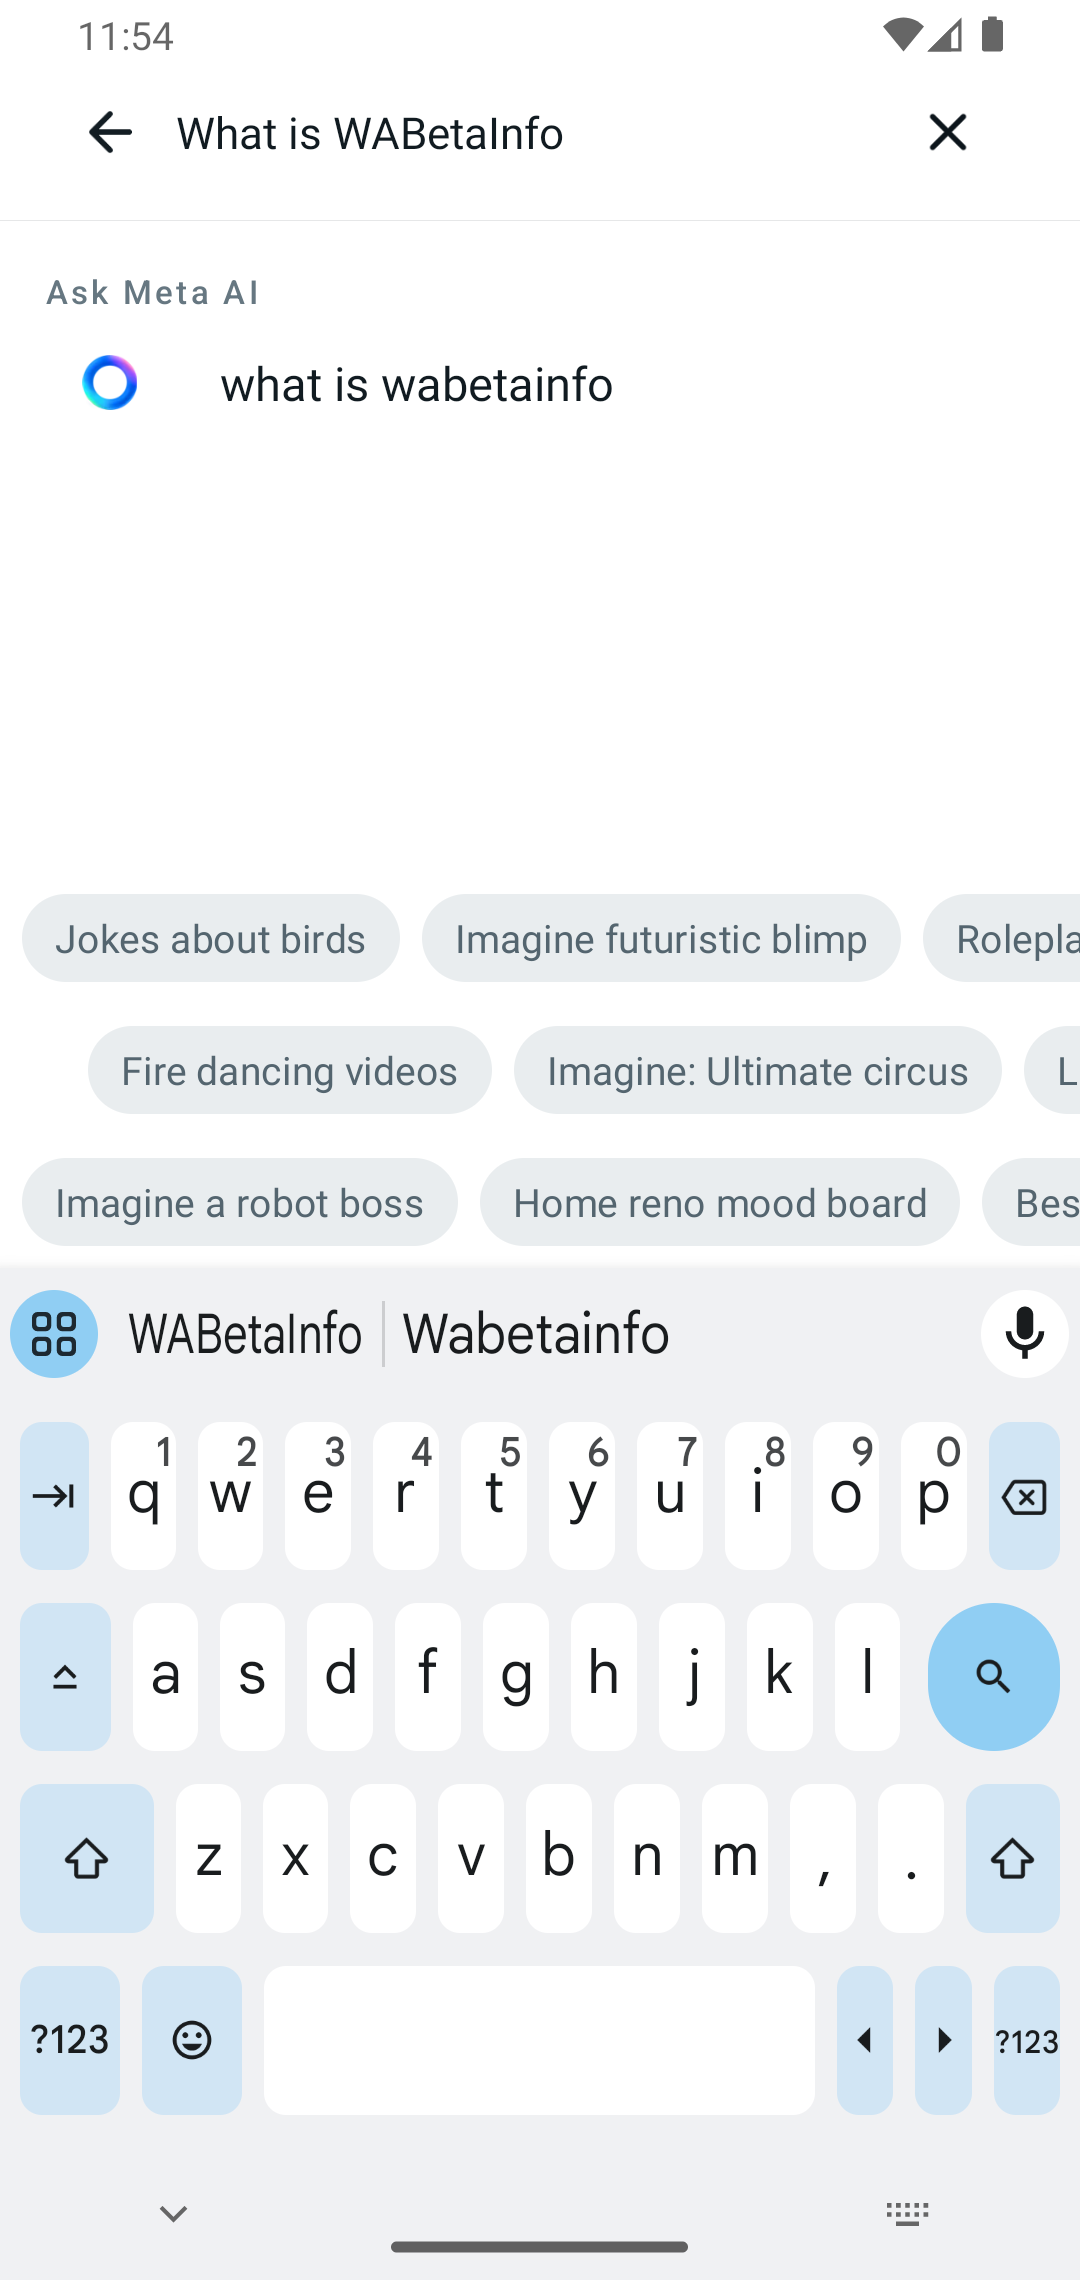 WhatsApp planea incluir Meta AI en la barra de búsqueda